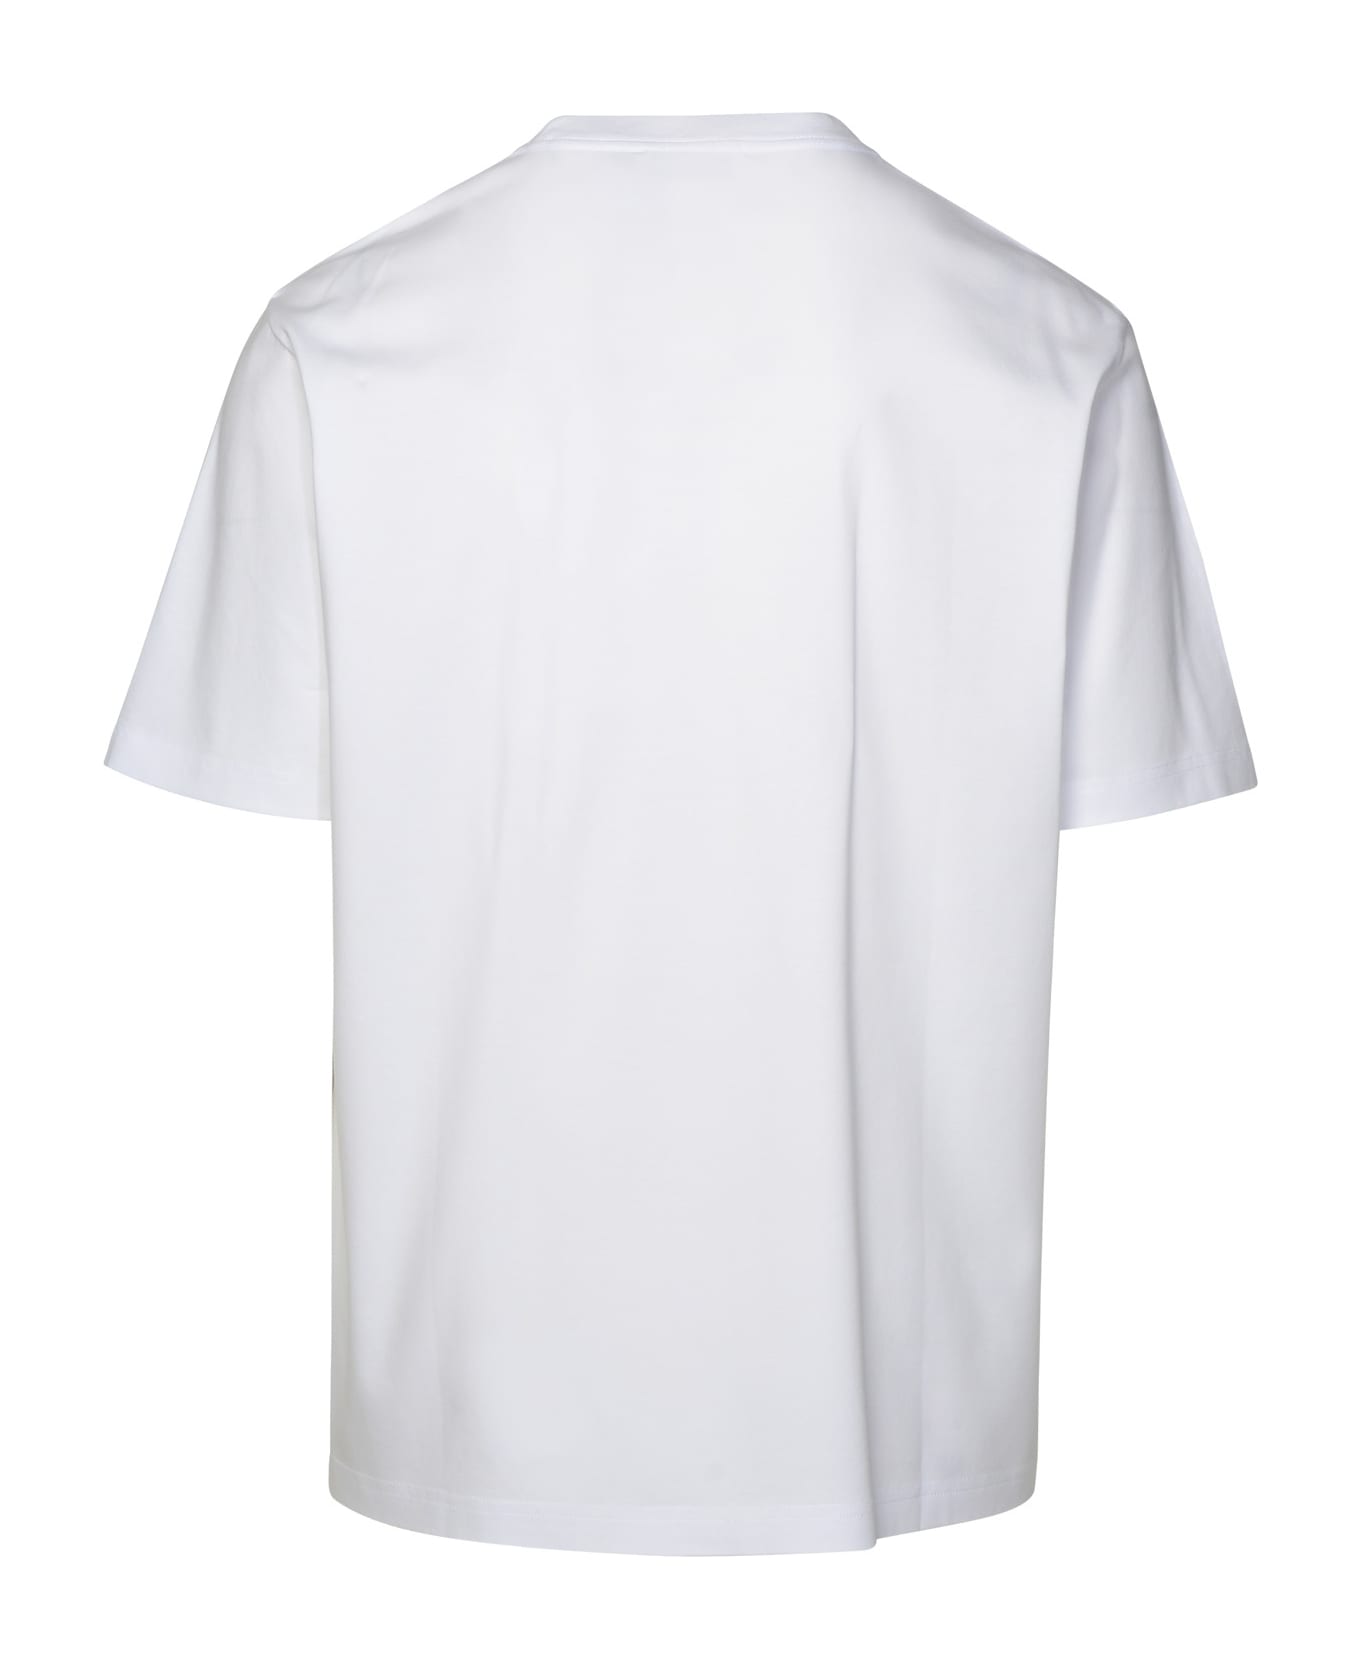 Lanvin White Cotton T-shirt - Optic white シャツ